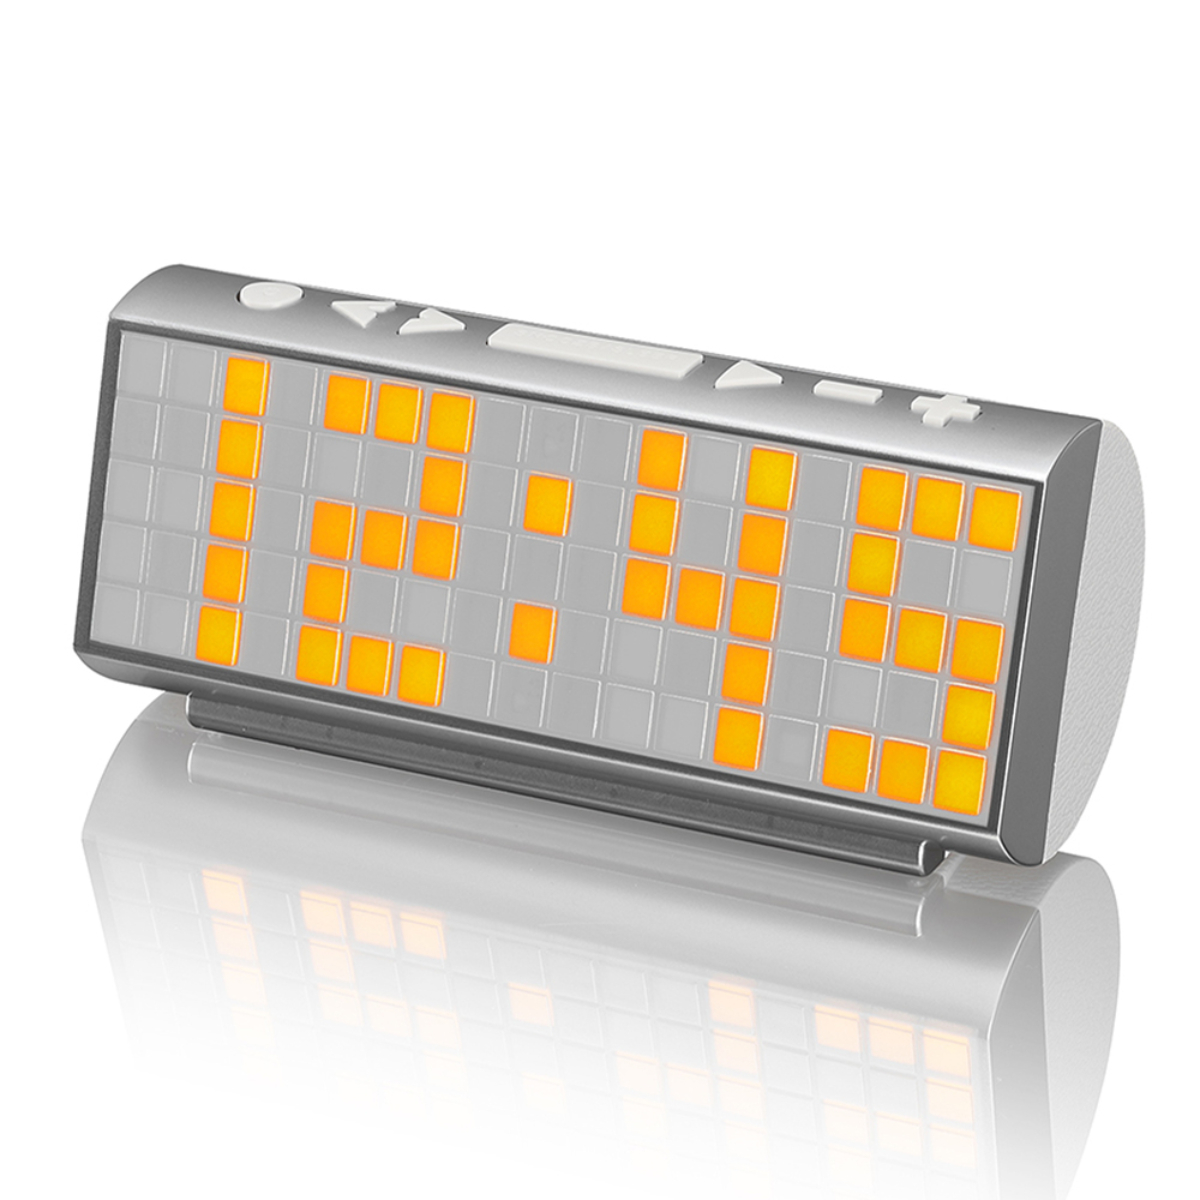 Sytech Radio Reloj despertador dot matrix calendario y temperatura ambiental sy1037 plata gris